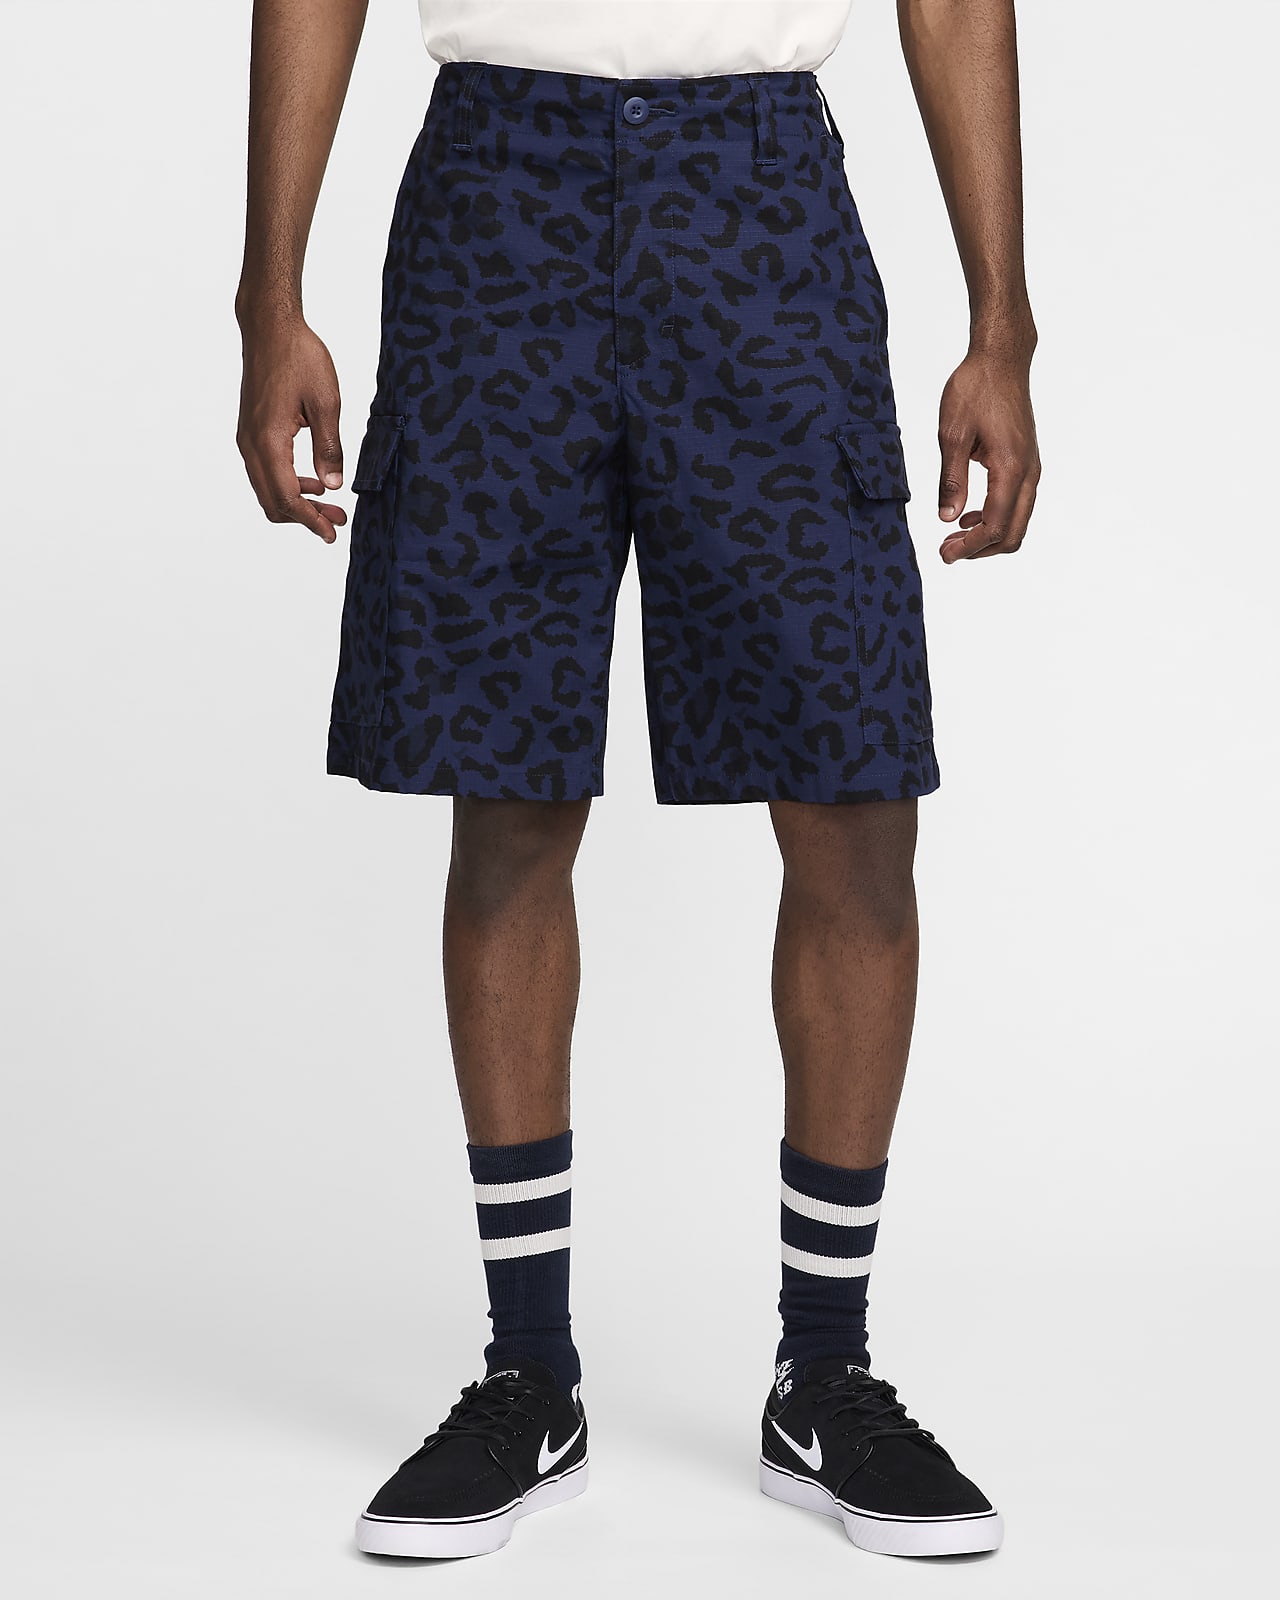 Nike SB Kearny Men's All-Over Print Shorts